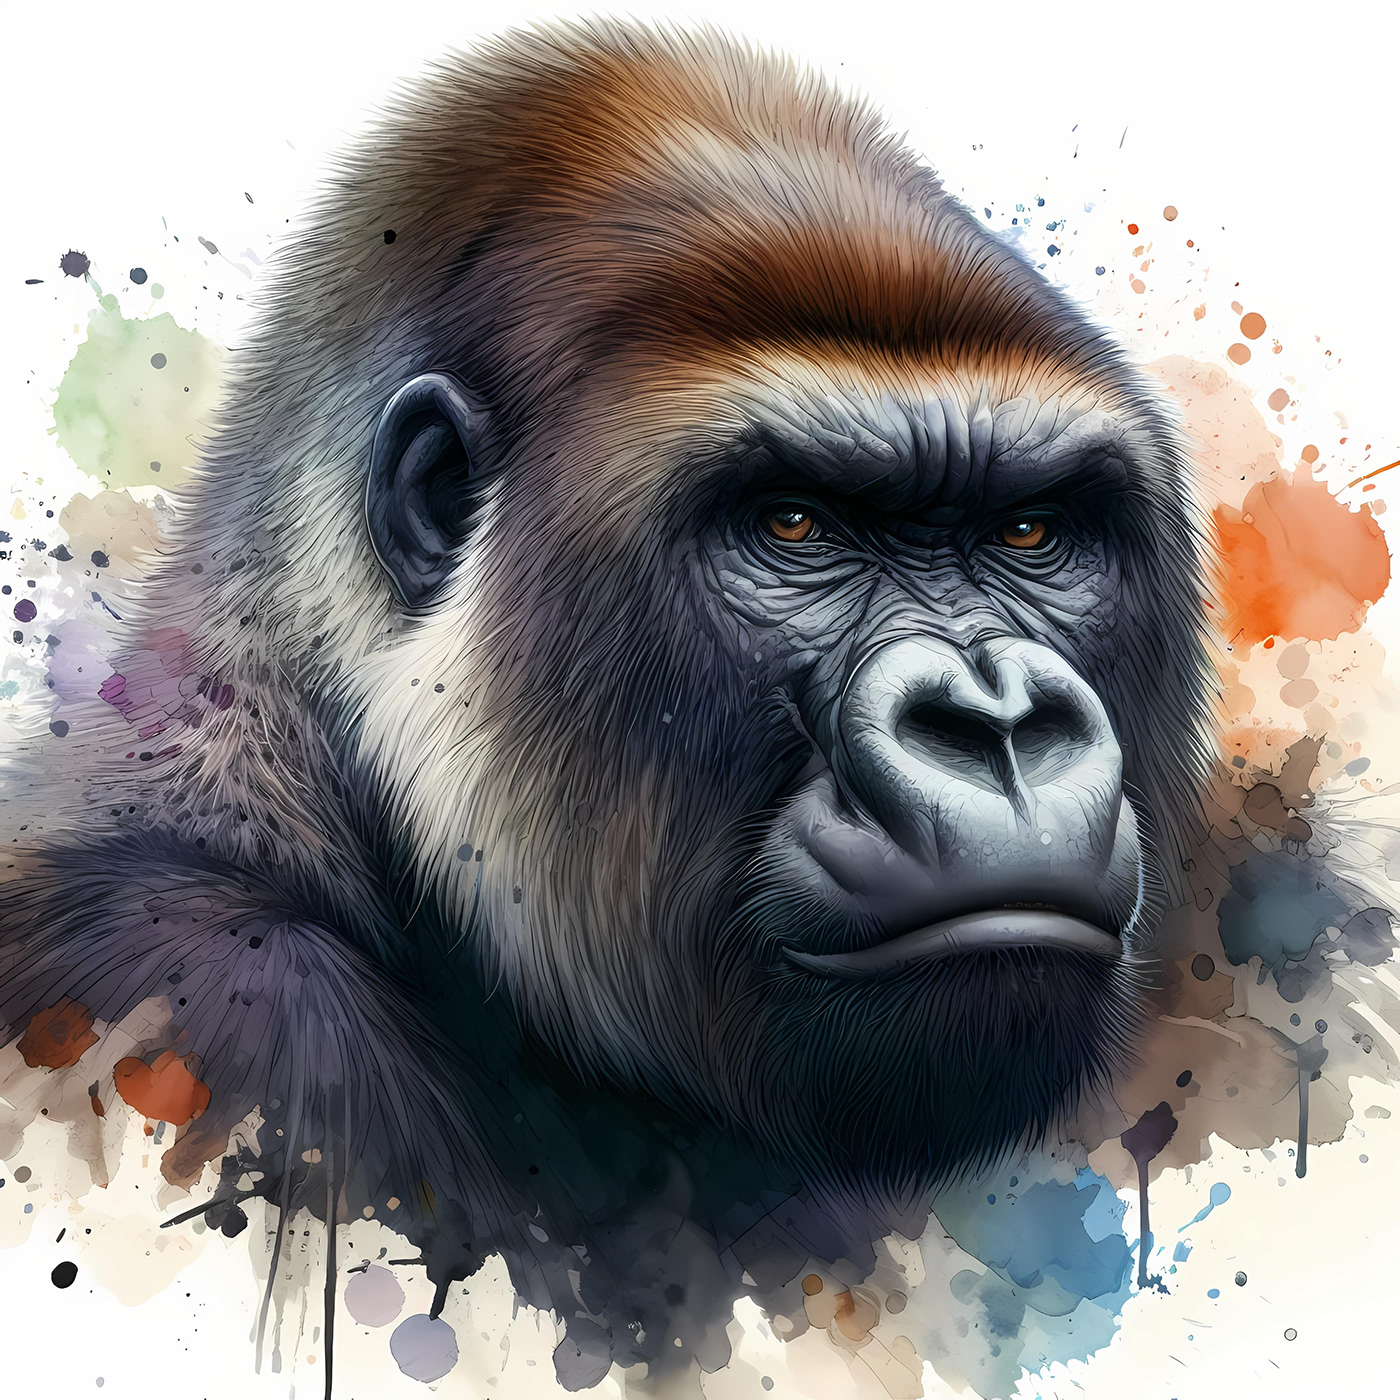 gorilla Digital Art  ILLUSTRATION  artwork digital illustration ape